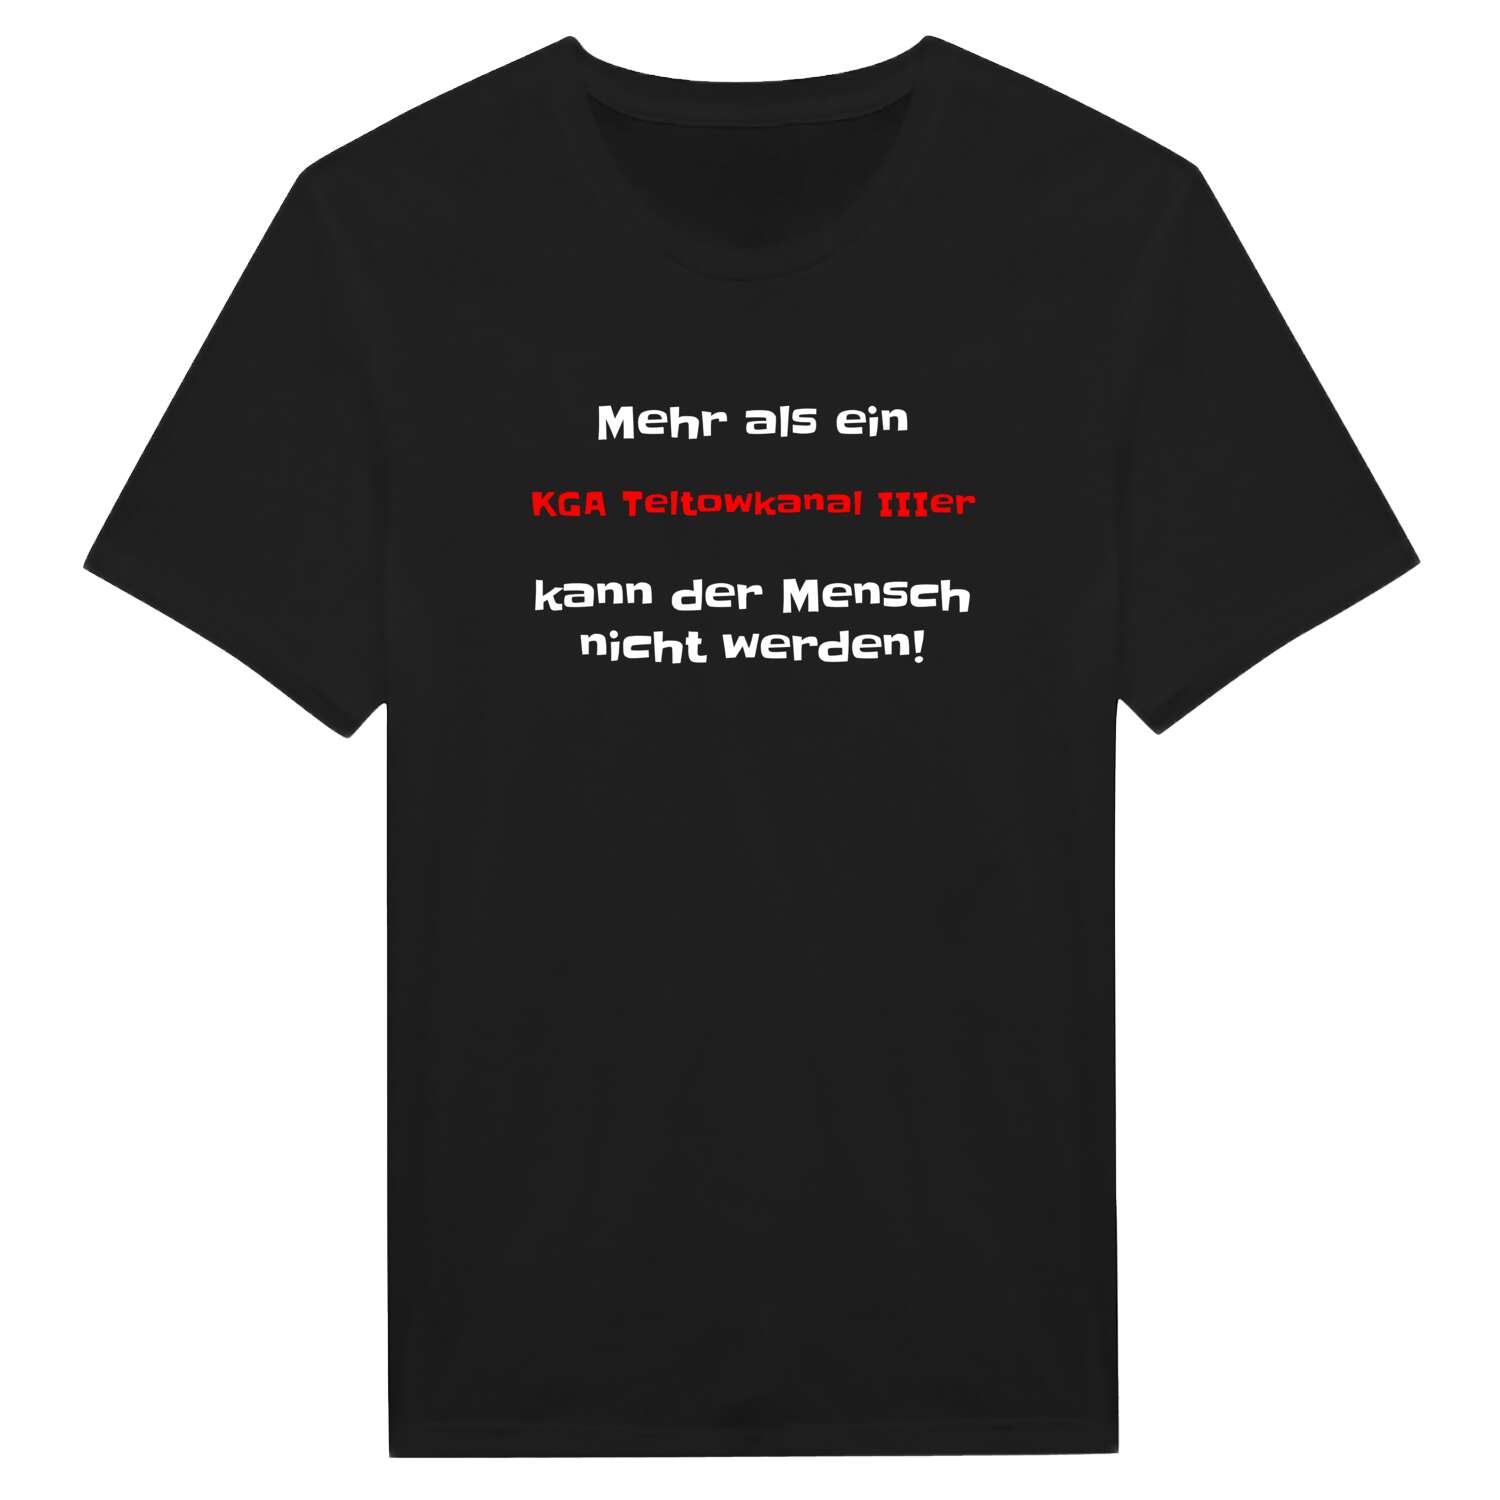 KGA Teltowkanal III T-Shirt »Mehr als ein«